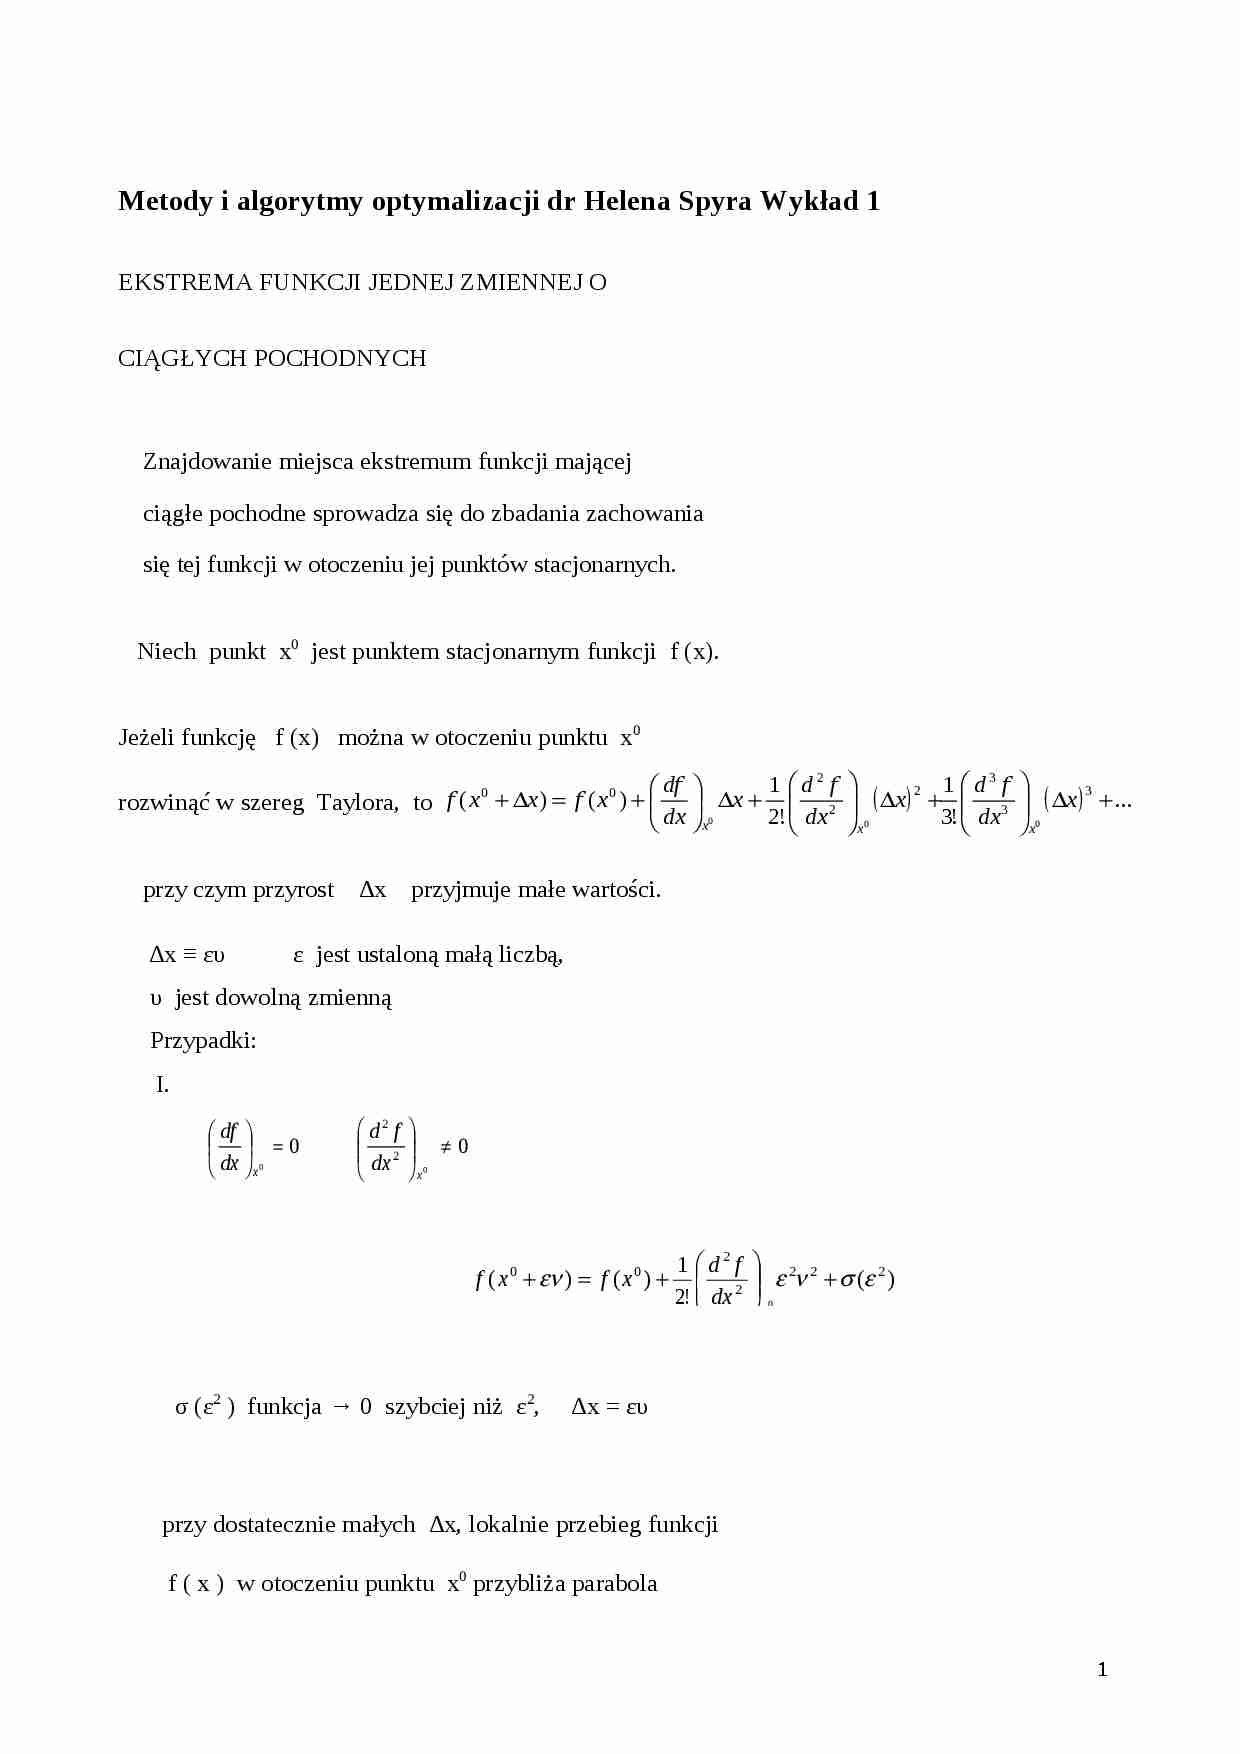 Metody i algorytmy optymalizacji- wykład 1 - strona 1